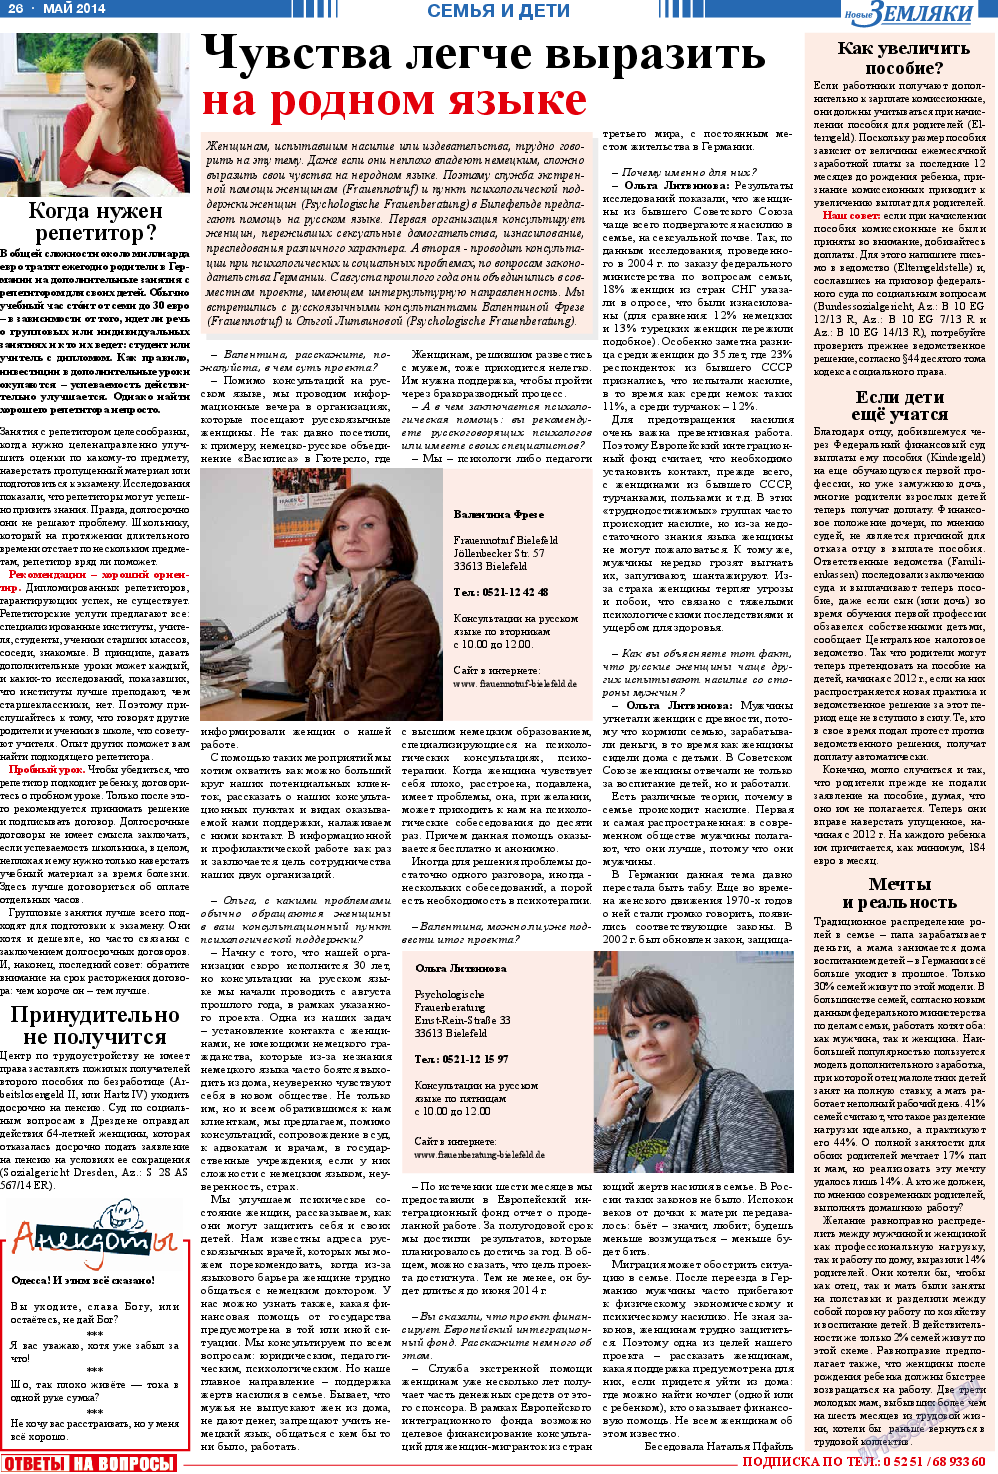 Новые Земляки, газета. 2014 №5 стр.26